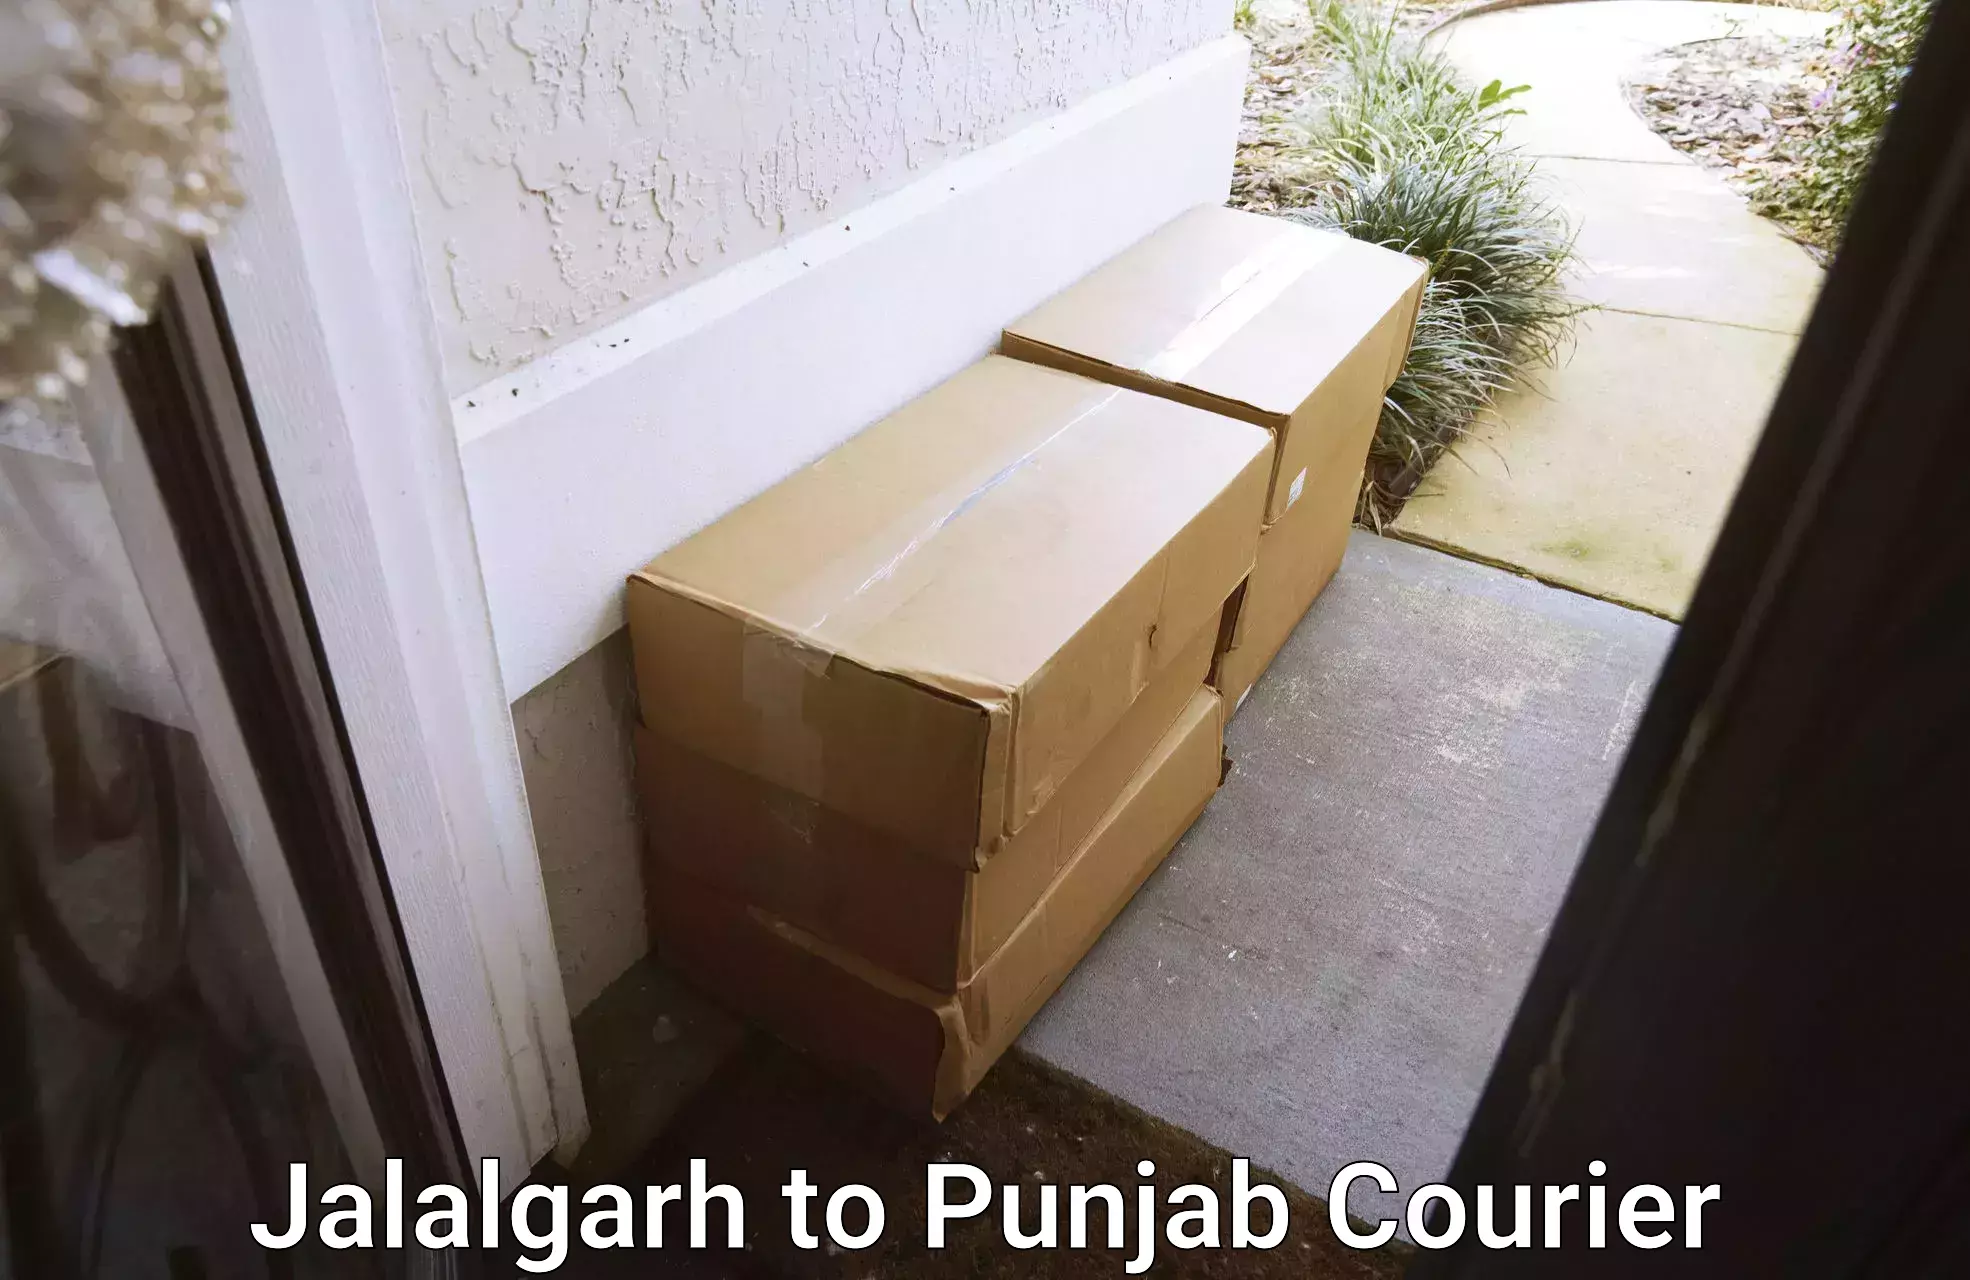 Professional moving company Jalalgarh to Central University of Punjab Bathinda